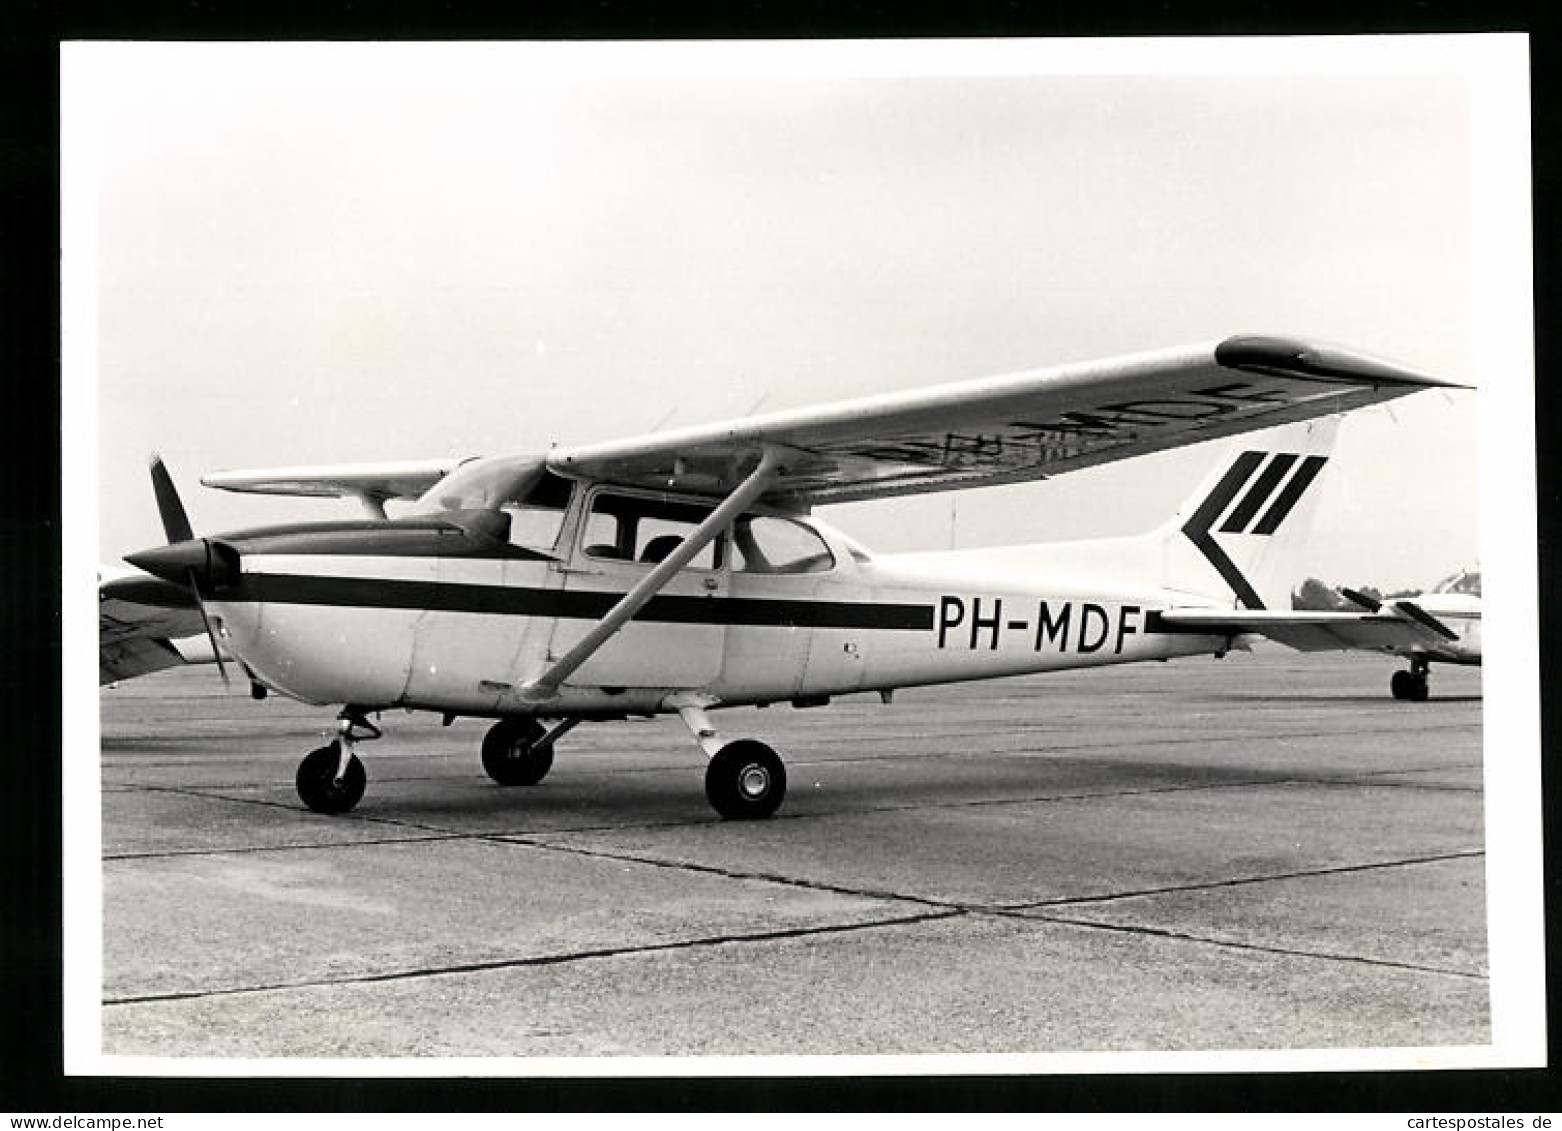 Fotografie Flugzeug, Schulterdecker Propellerflugzeug, Kennung PH-MDF  - Luftfahrt